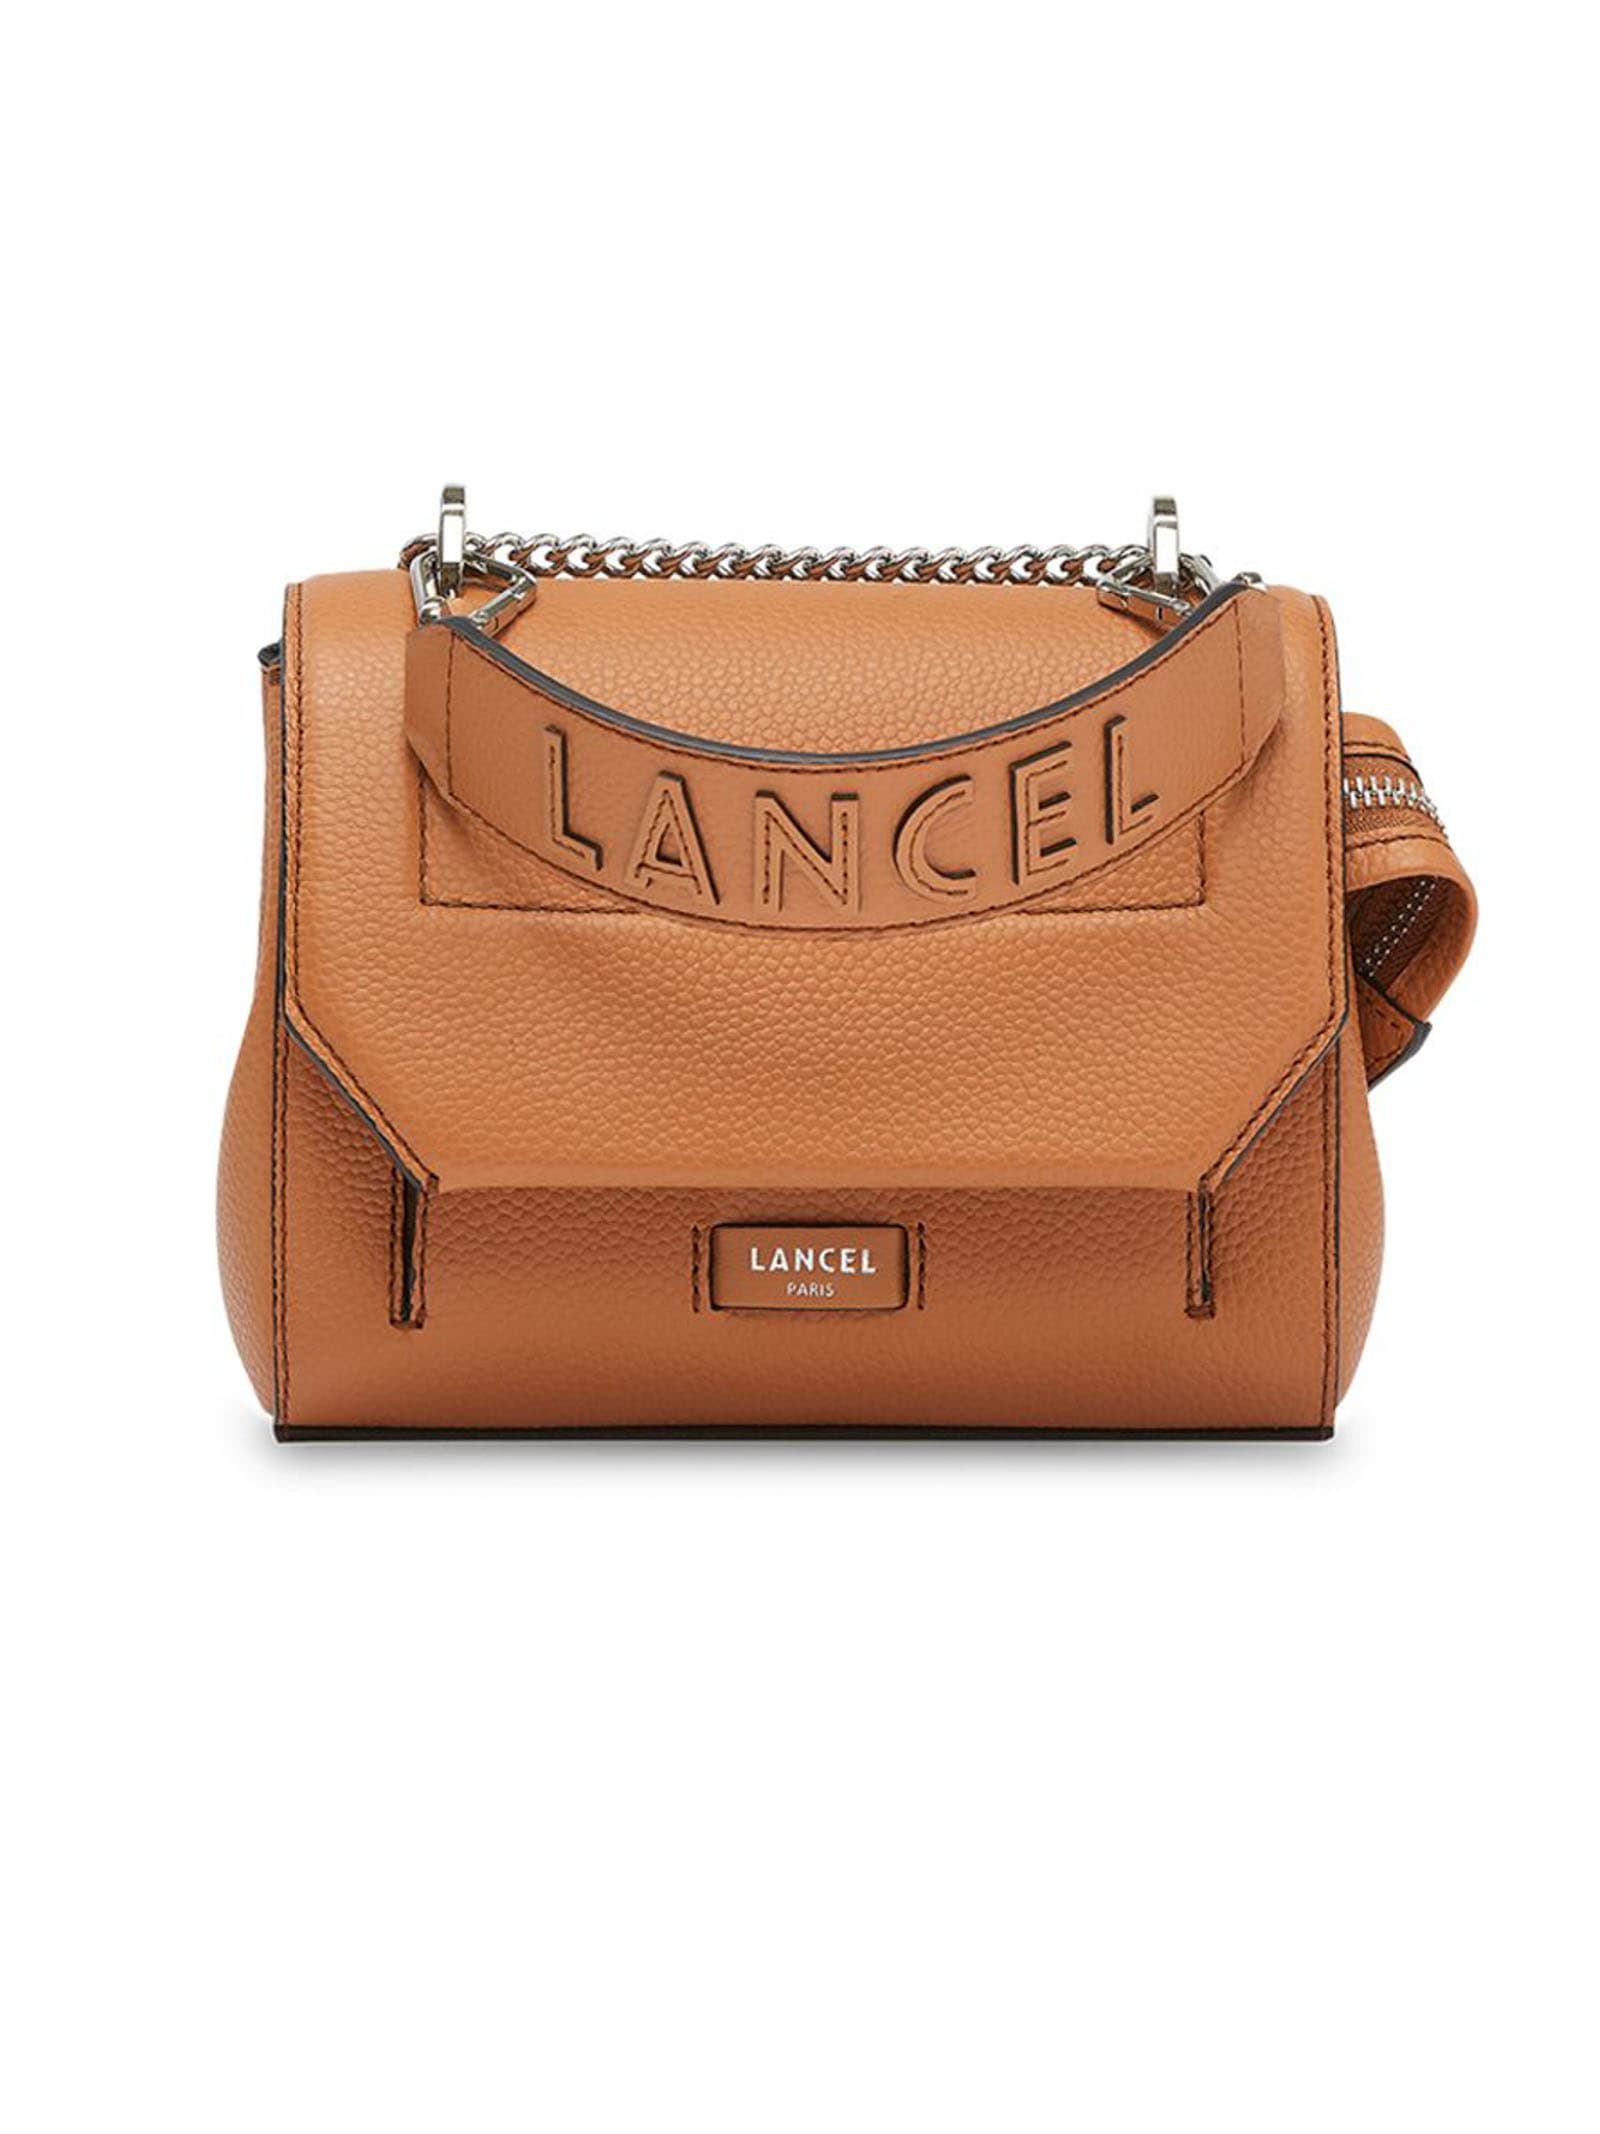 Lancel Camel Grained Leather Shoulder Bag